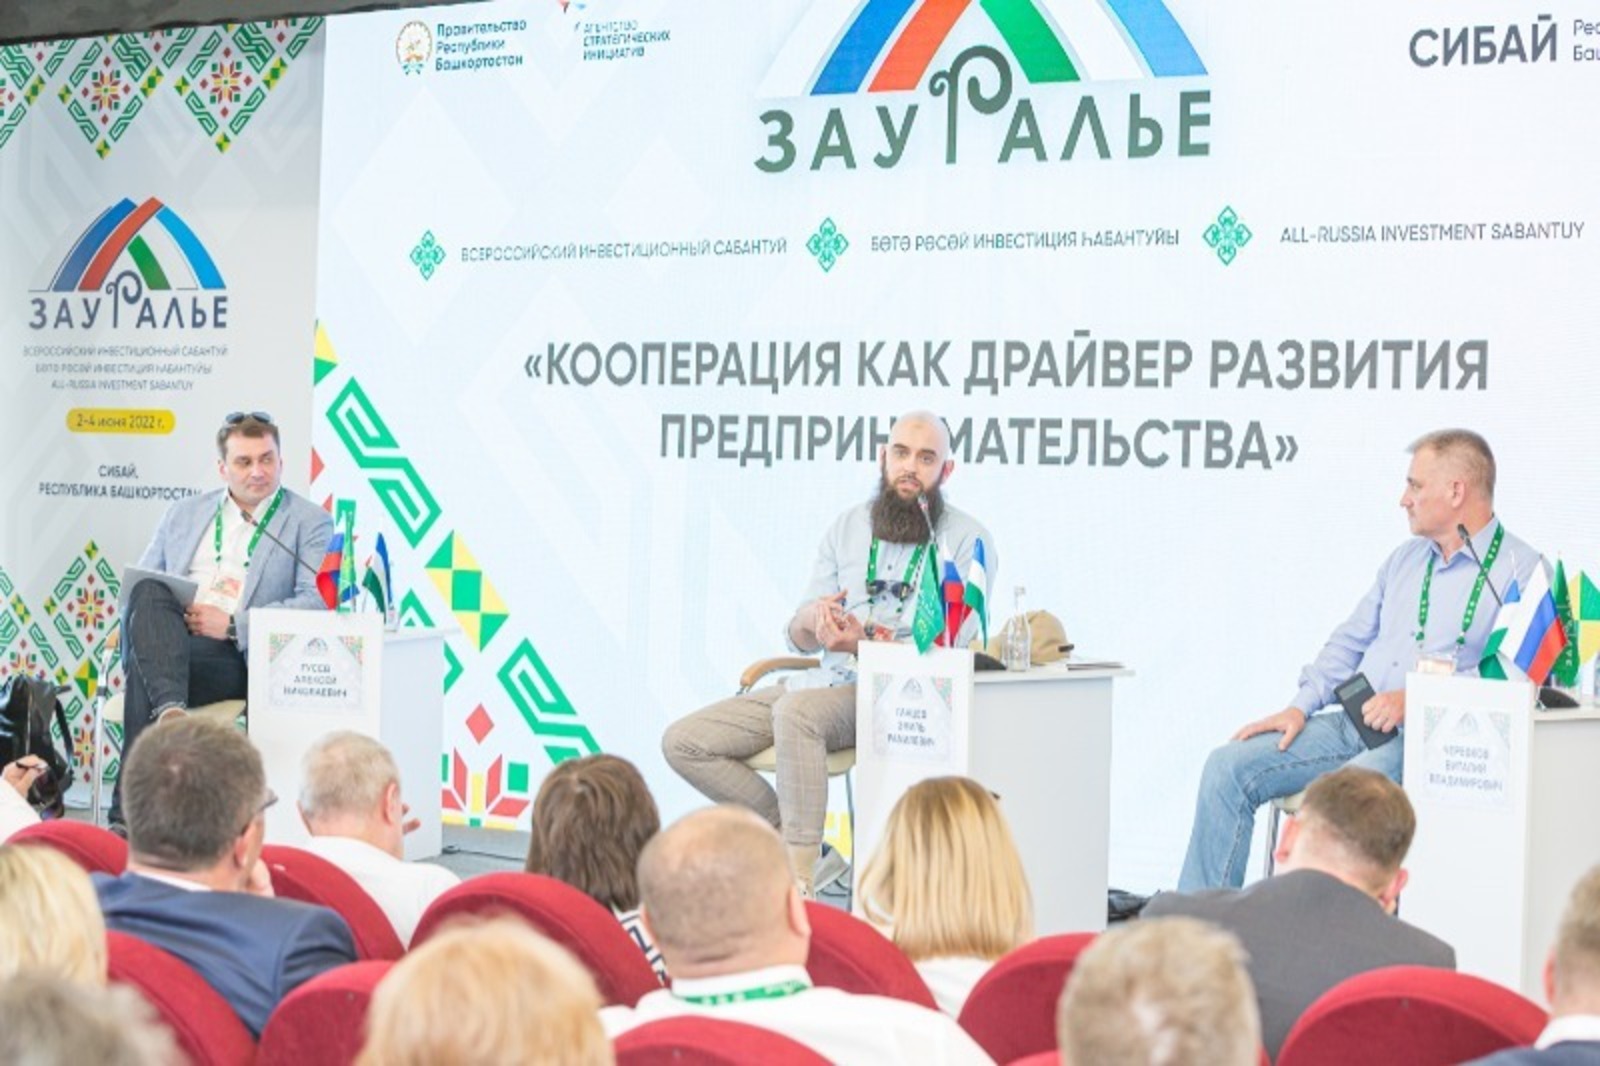 На инвестсабантуе «Зауралье» по линии Минторга РБ подписано соглашение на сумму 130 млн рублей